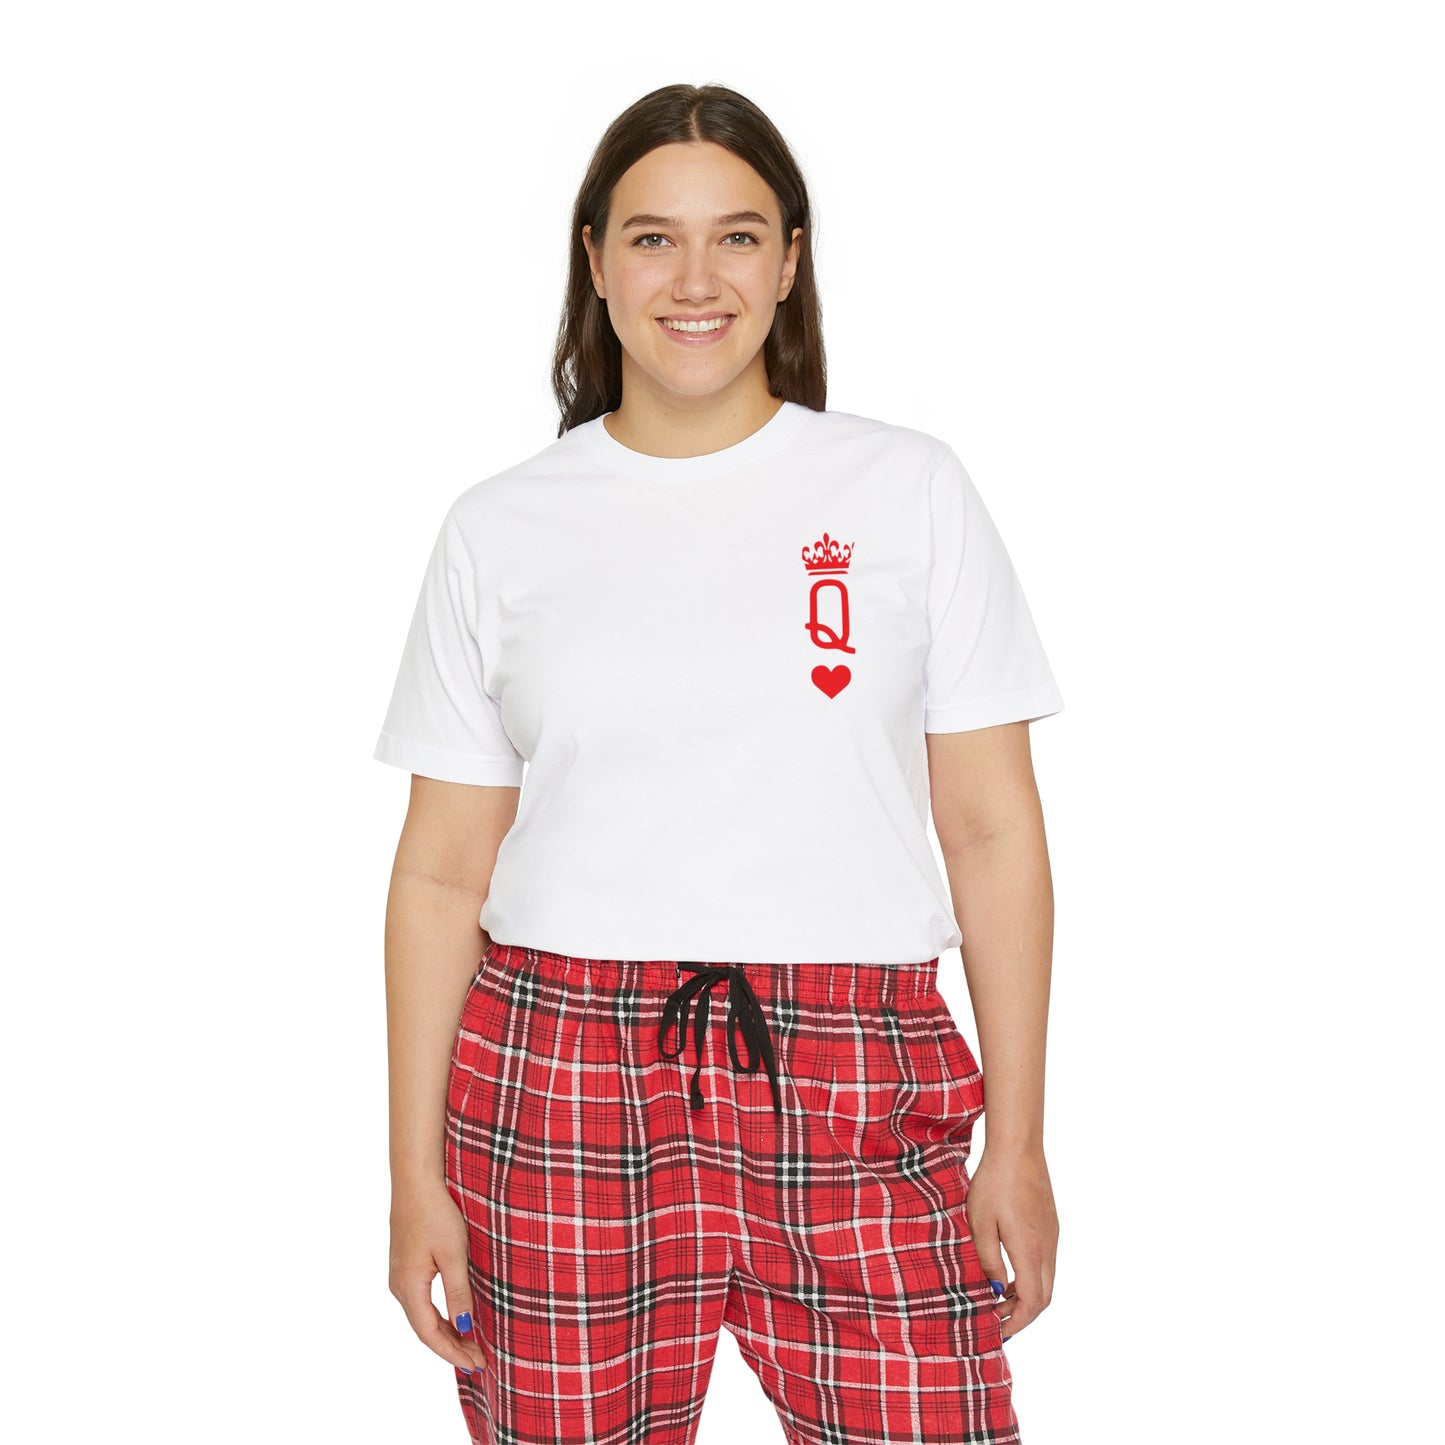 Queen Of Hearts Women's Short Sleeve Pajama Set